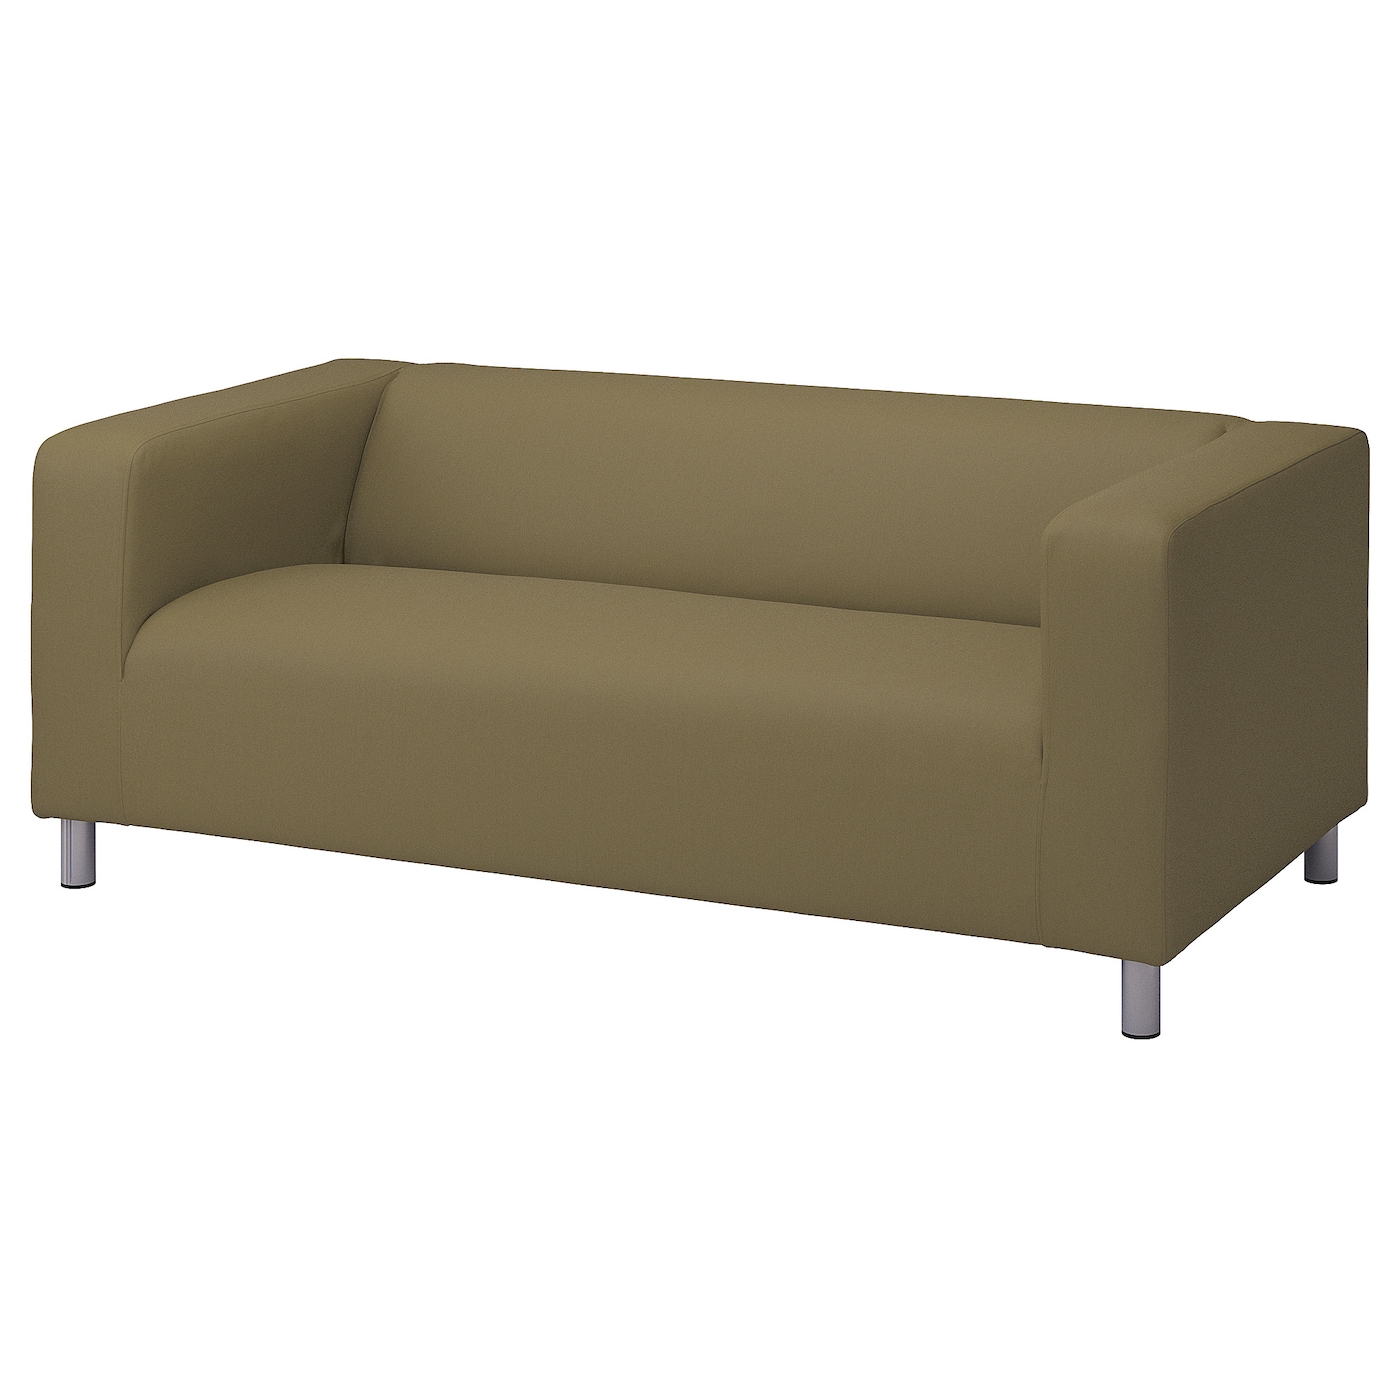 2-местный диван - IKEA KLIPPAN, 66x88x180см, зеленый, КЛИППАН ИКЕА